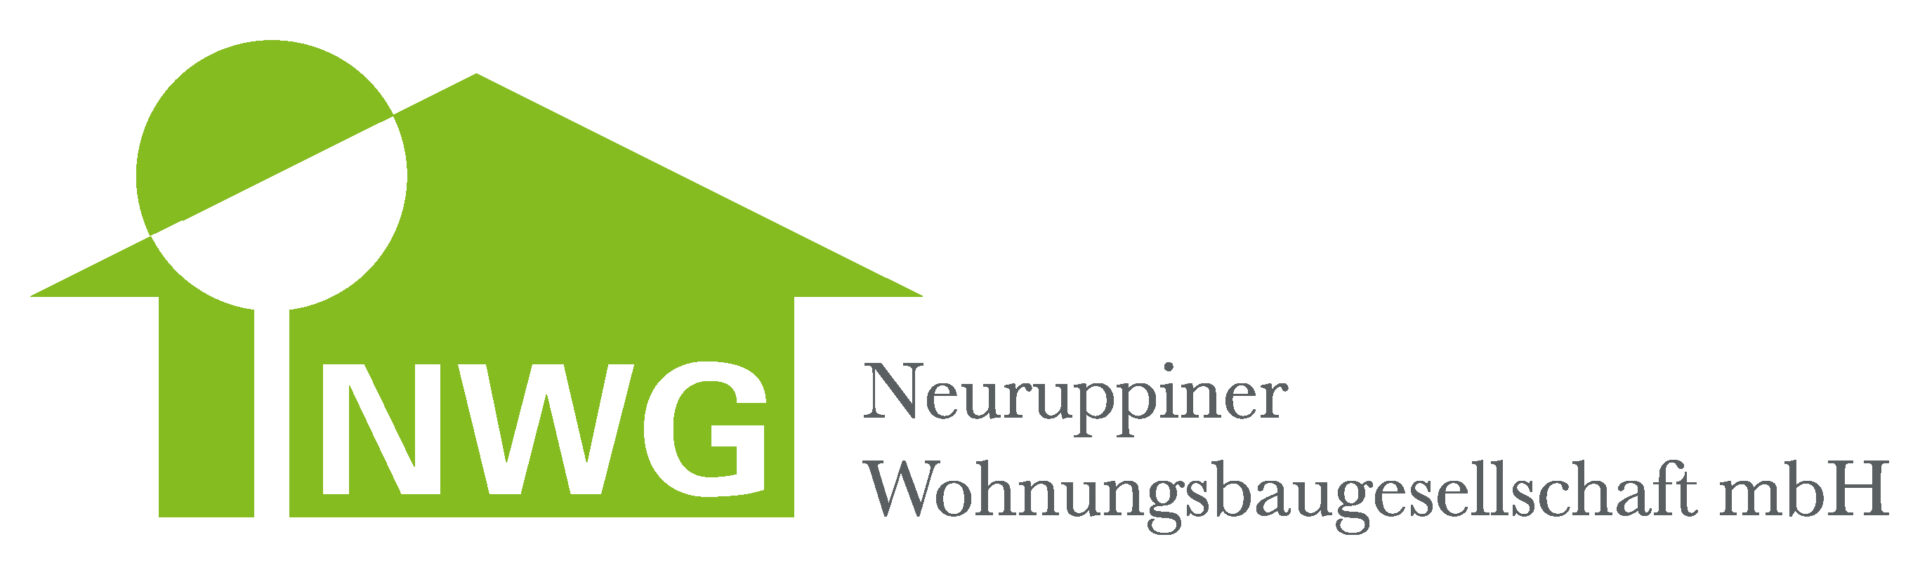 Logo der Neuruppiner Wohnungsbaugesellschaft mbH